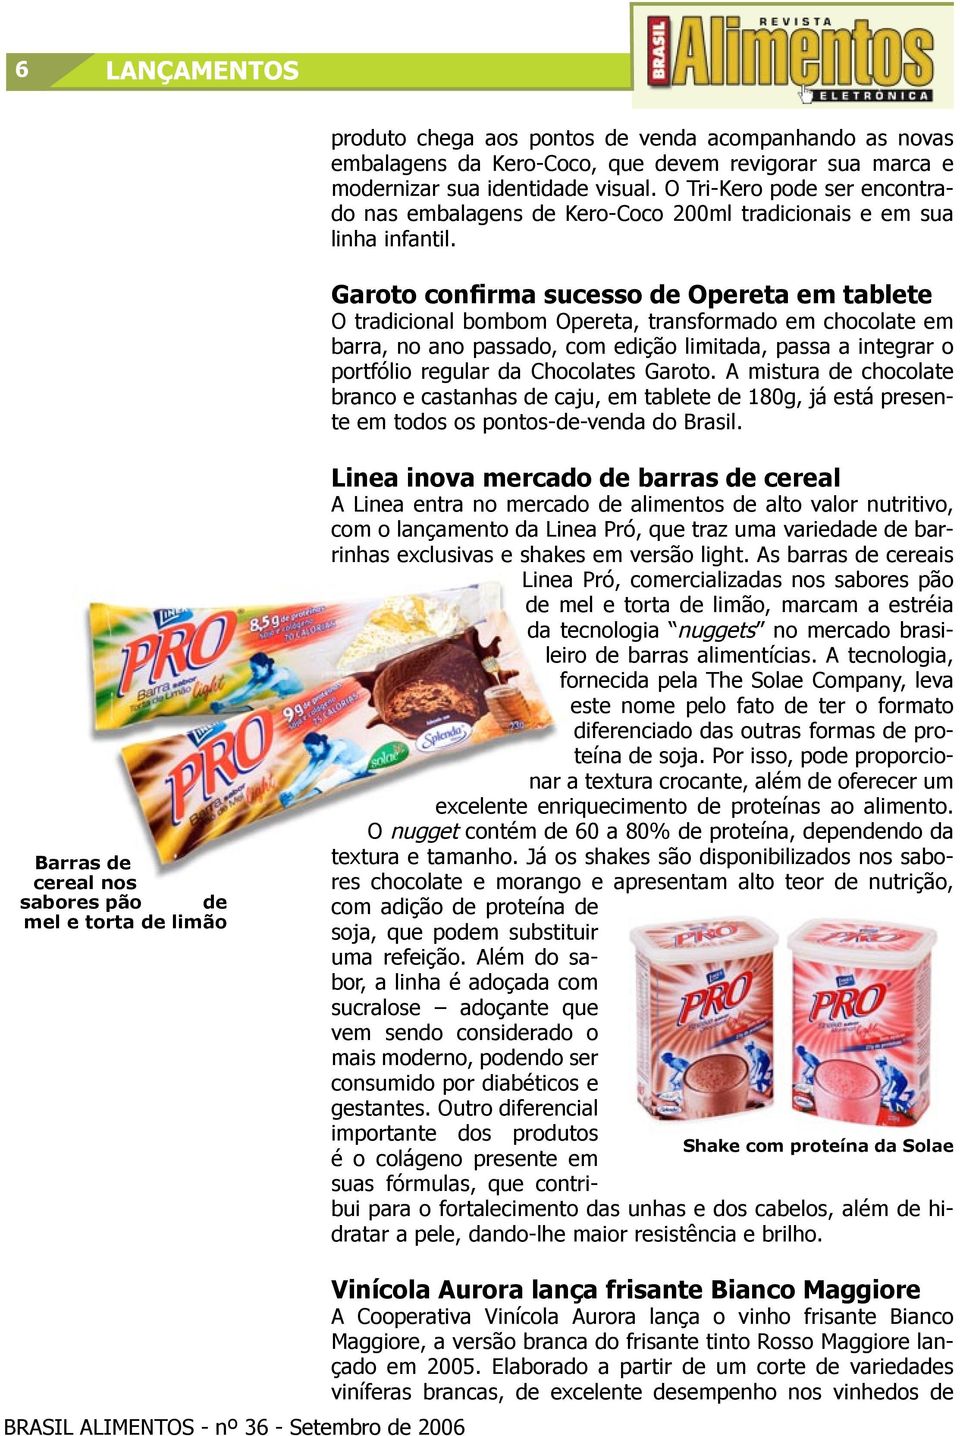 Garoto confirma sucesso de Opereta em tablete O tradicional bombom Opereta, transformado em chocolate em barra, no ano passado, com edição limitada, passa a integrar o portfólio regular da Chocolates